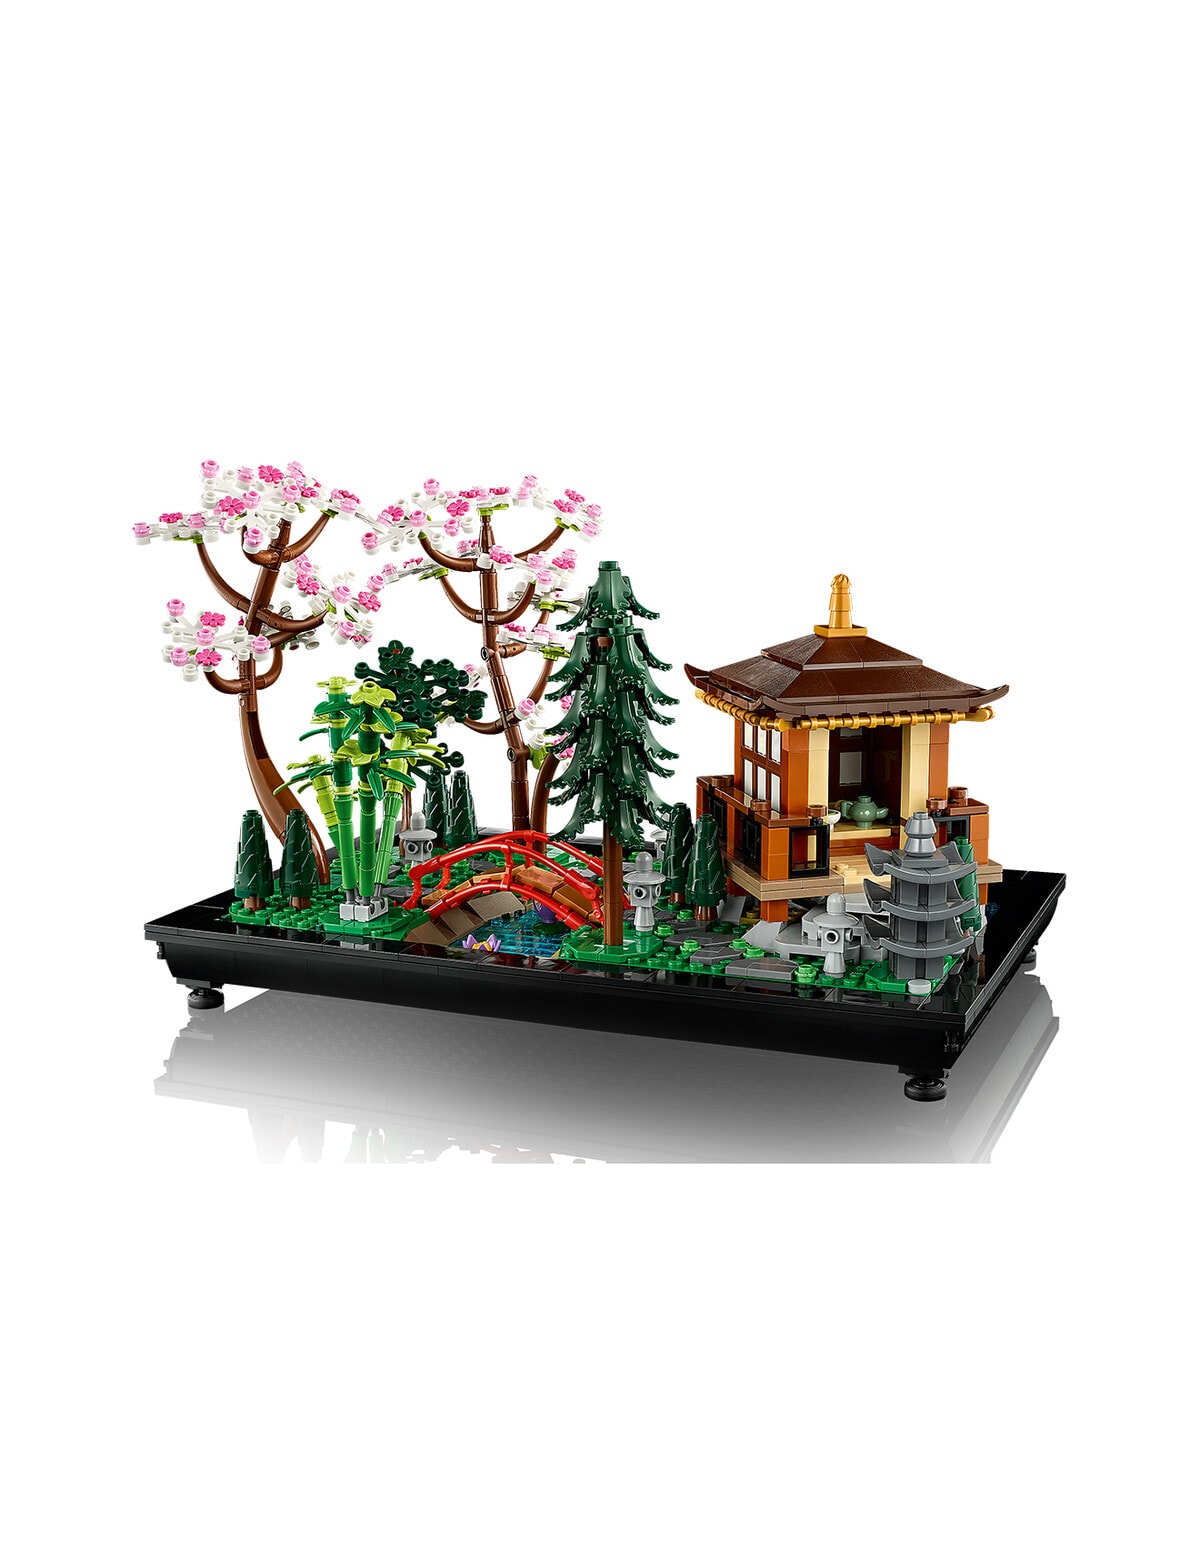 Le tante piante LEGO di 10315 Tranquil Garden